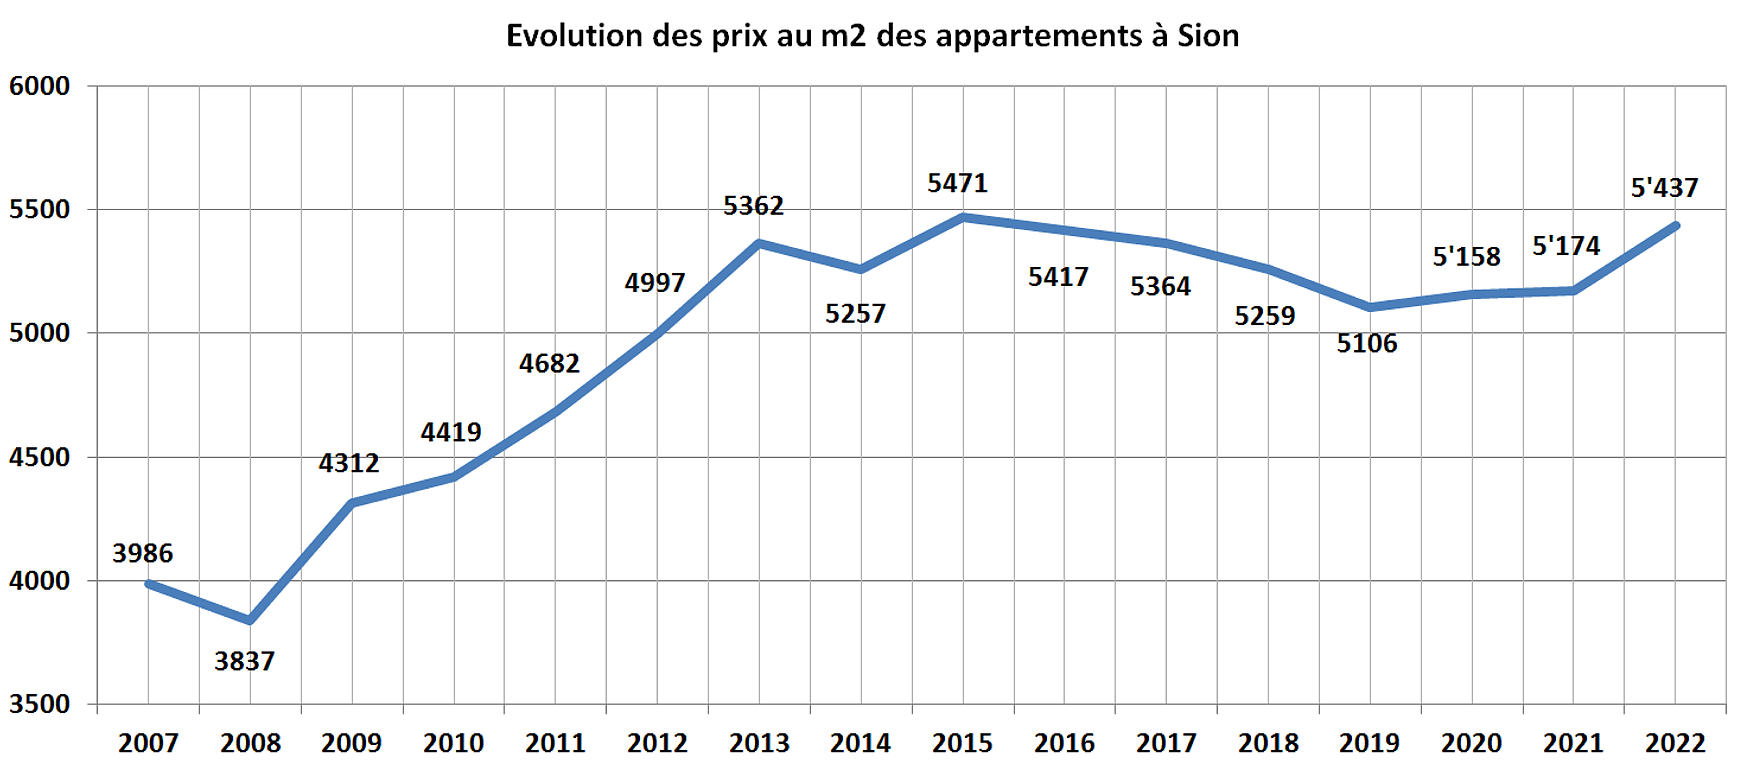 evolution prix m2 appartement sion 2022